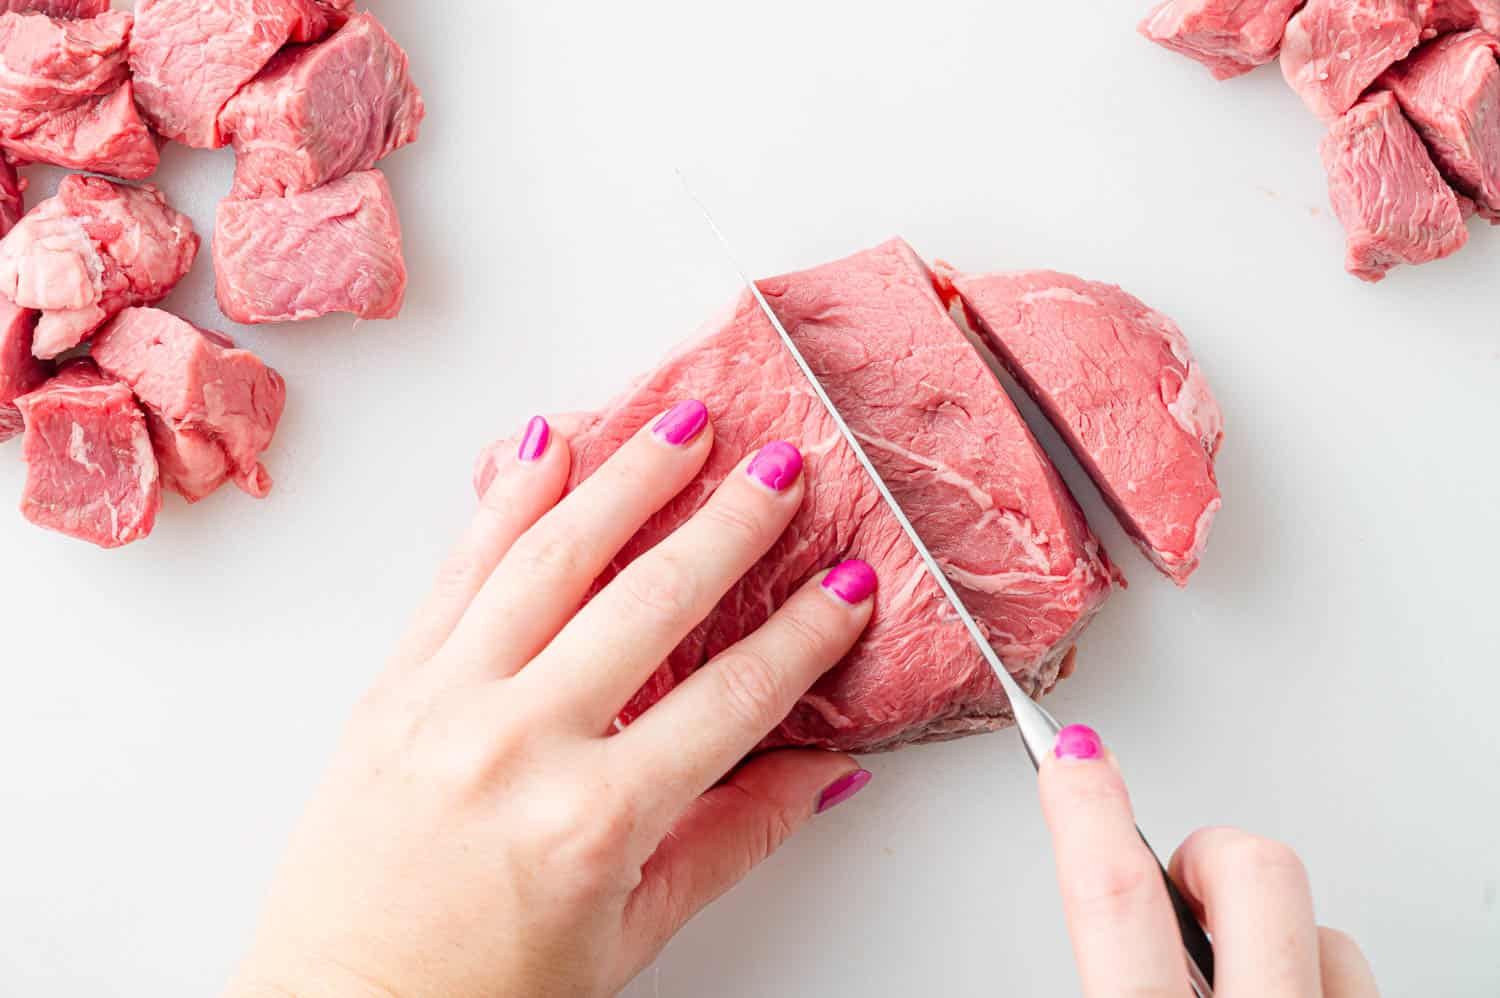 Raw steak being cut into bites.